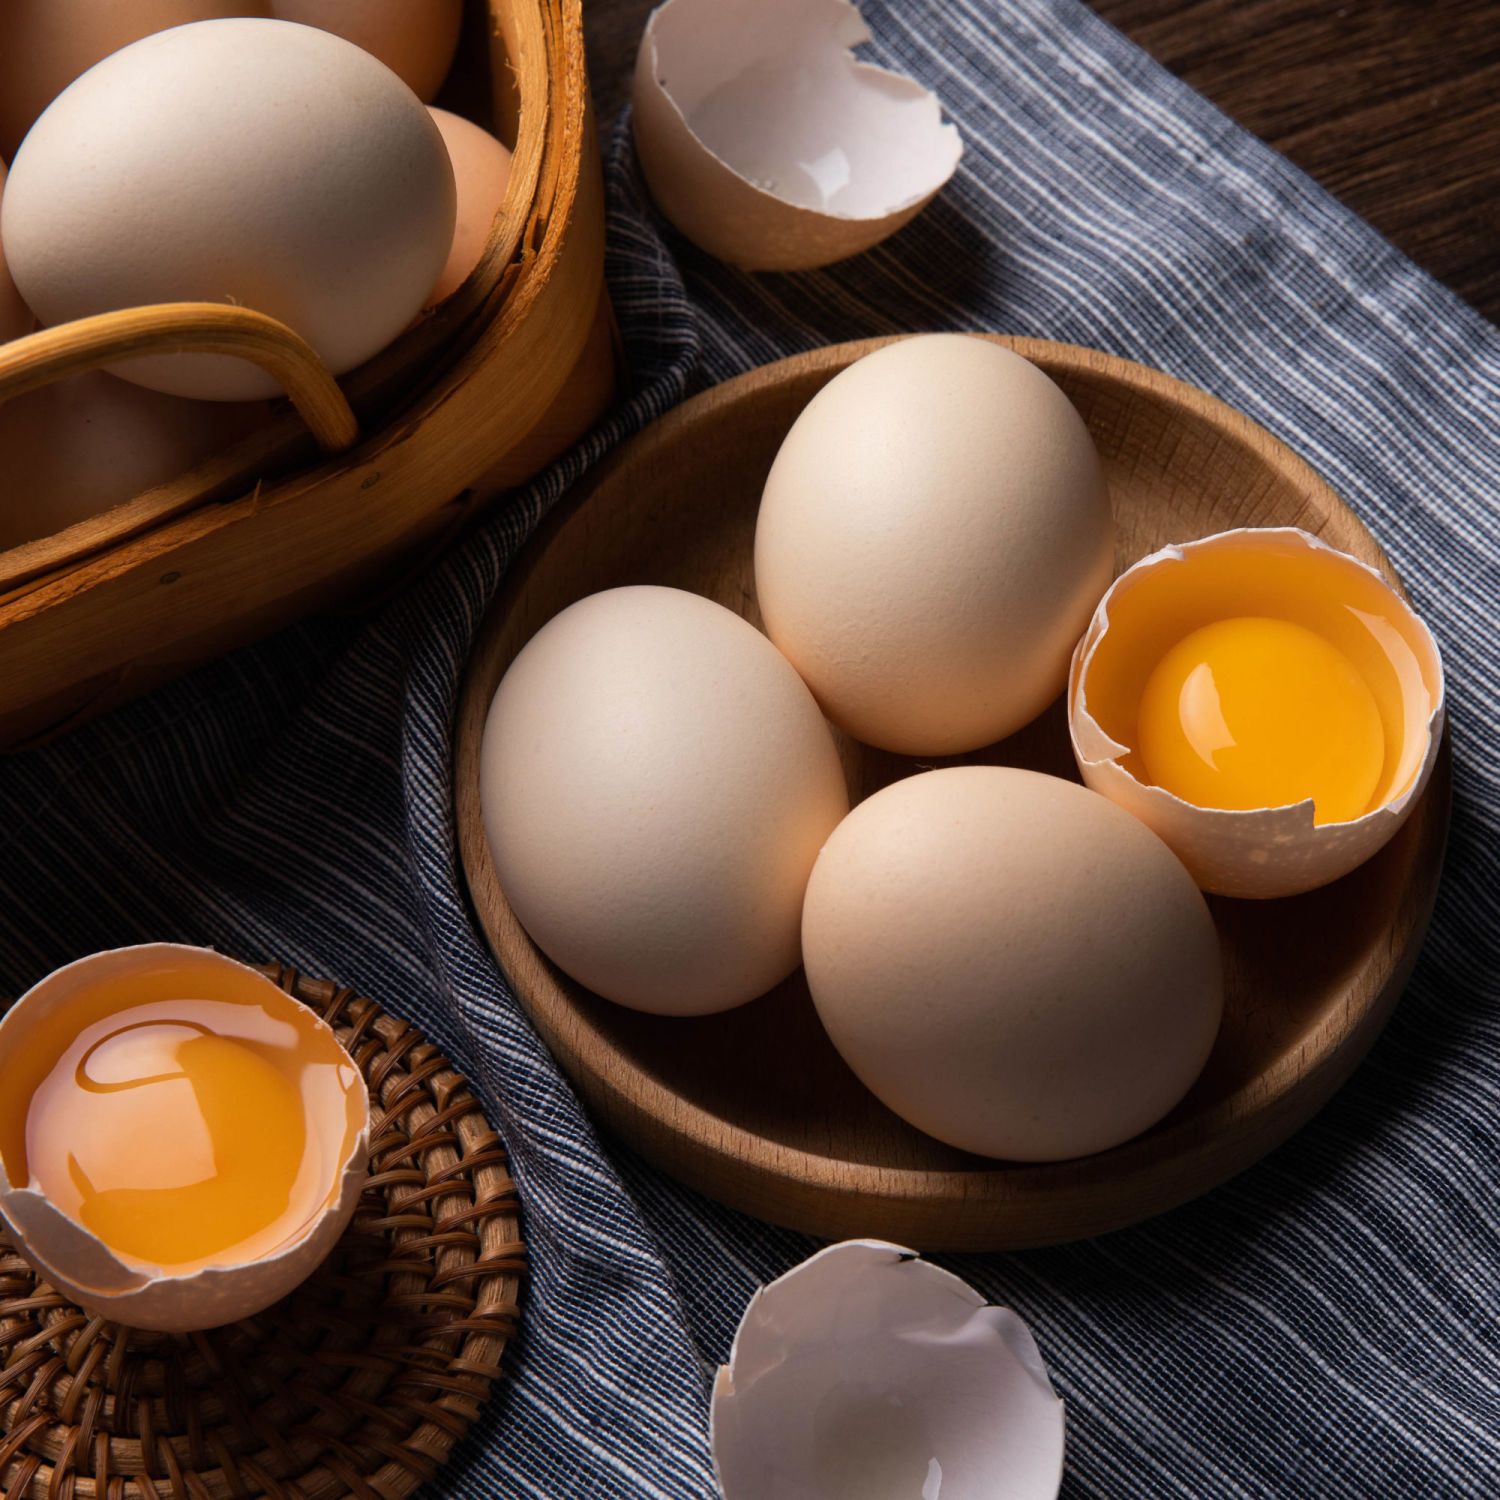 165853-贵州鸡蛋坡妹兴义册亨本地杂粮生鲜散养鸡蛋农产品土特产30枚包邮-详情图